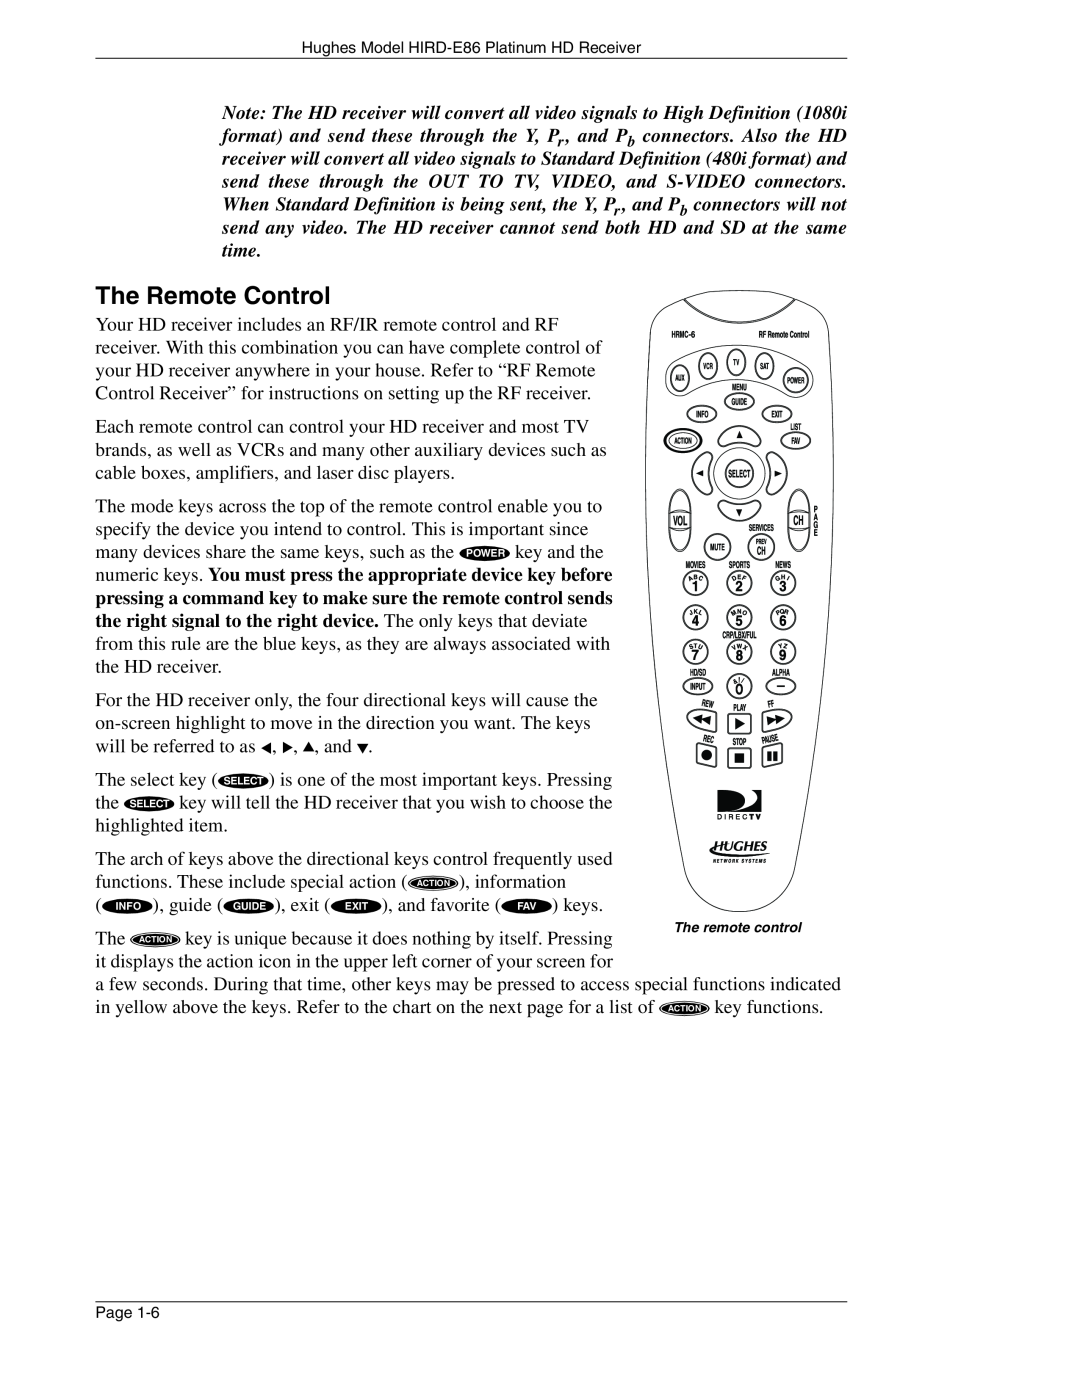 DirecTV HIRD-E86 manual The Remote Control 